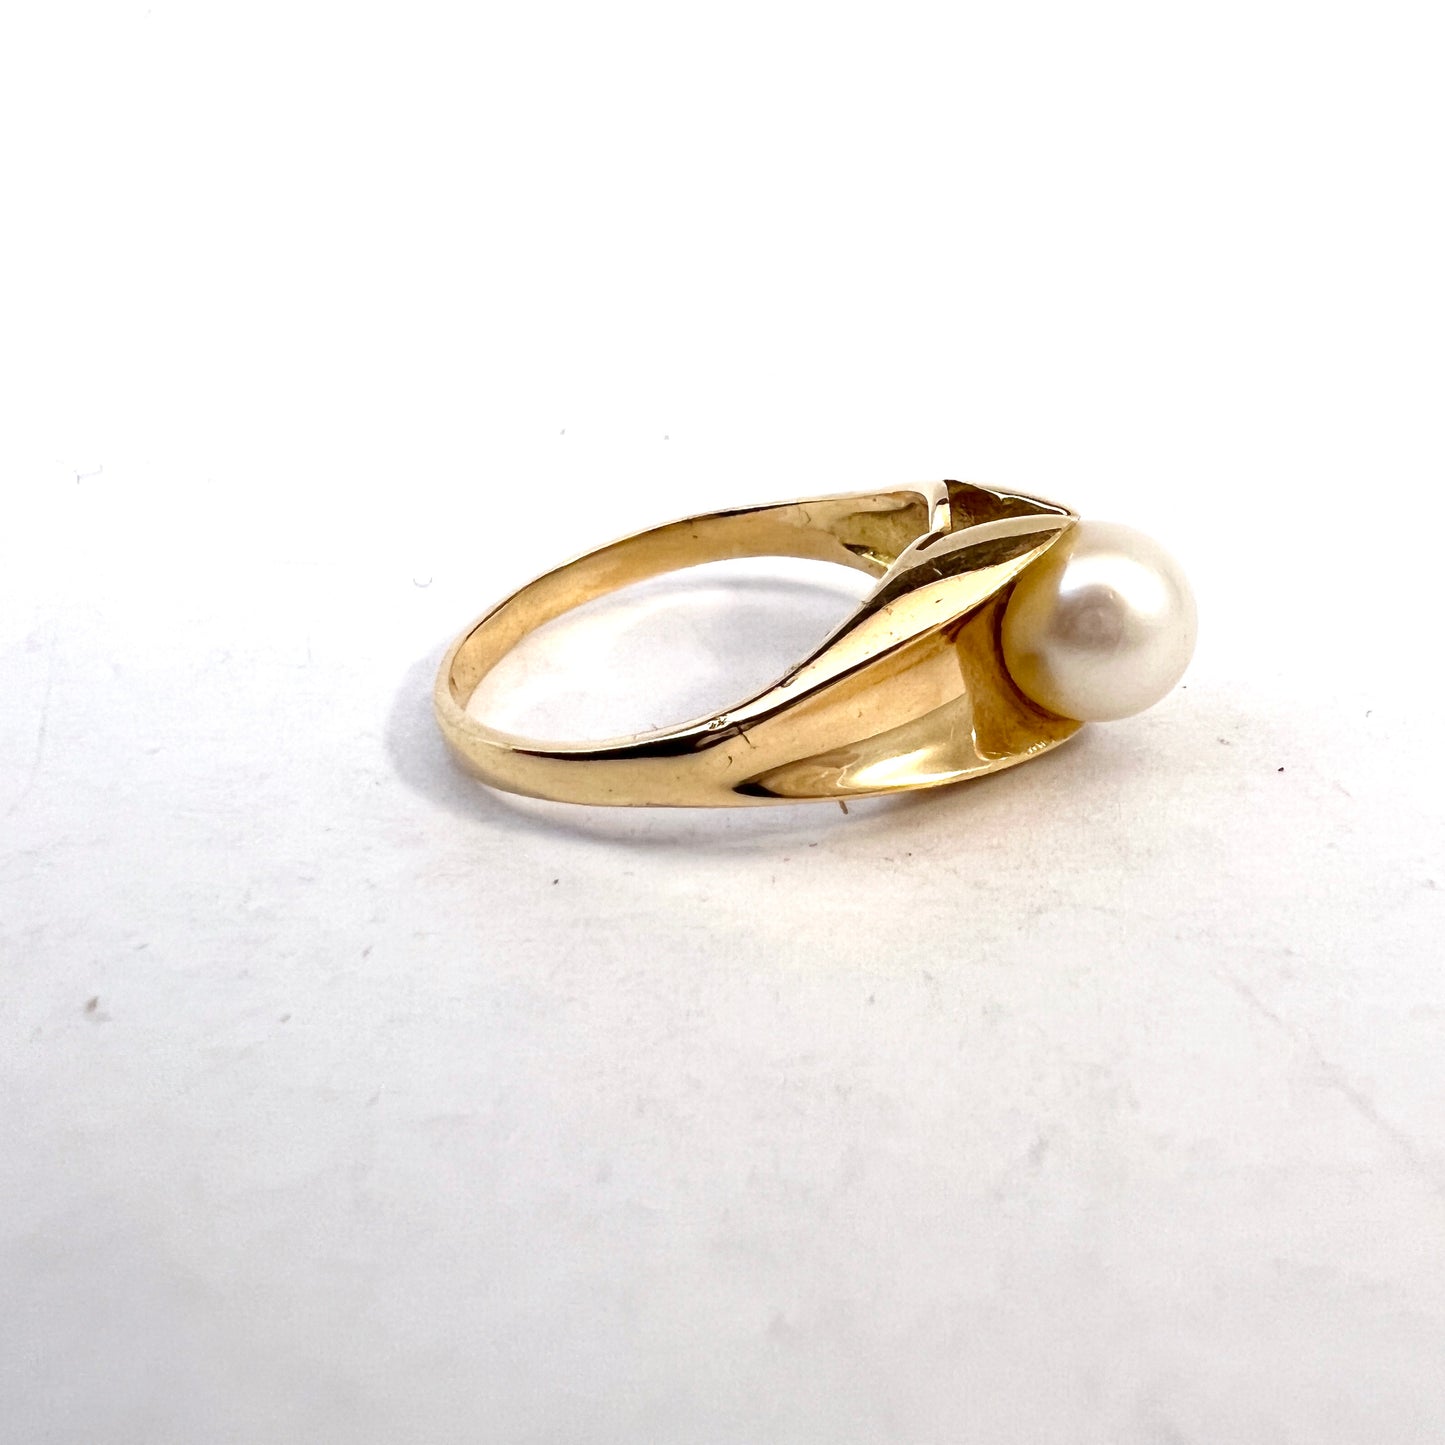 Sweden 1960s. Vintage 18k Gold Cultured Pearl Ring.